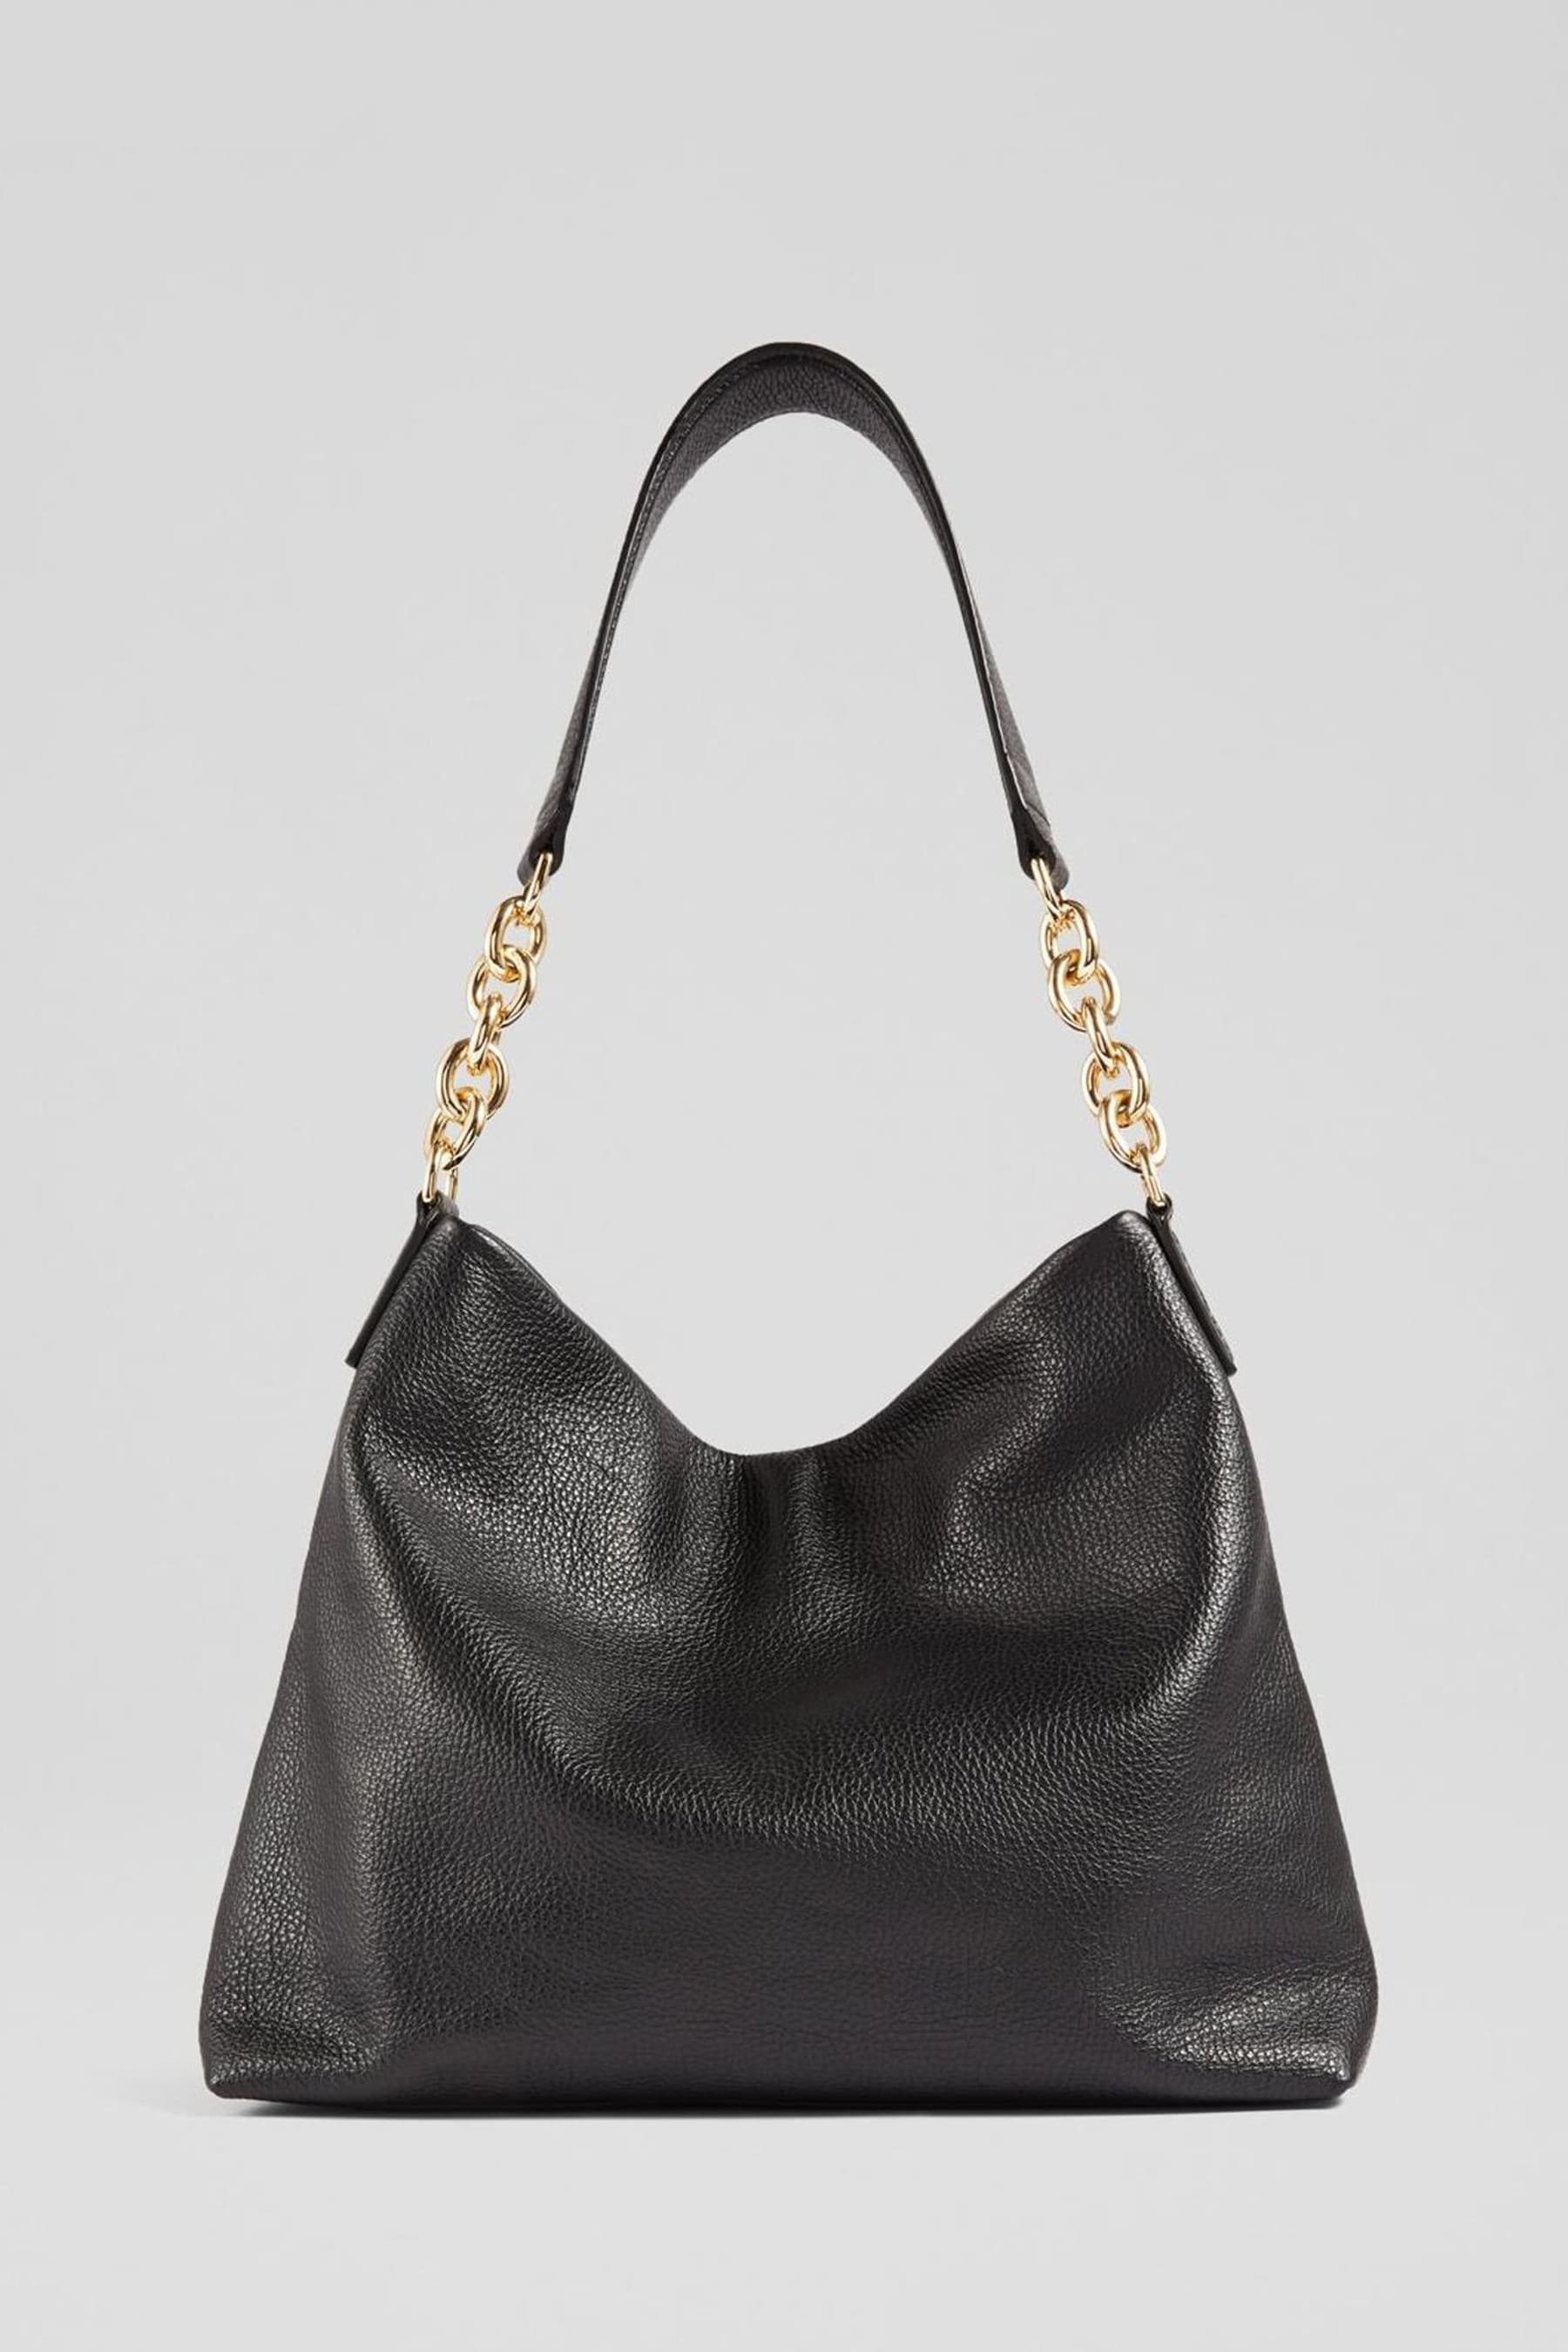 Buy LK Bennett Rebecca Hobo Black Bag from the Next UK online shop